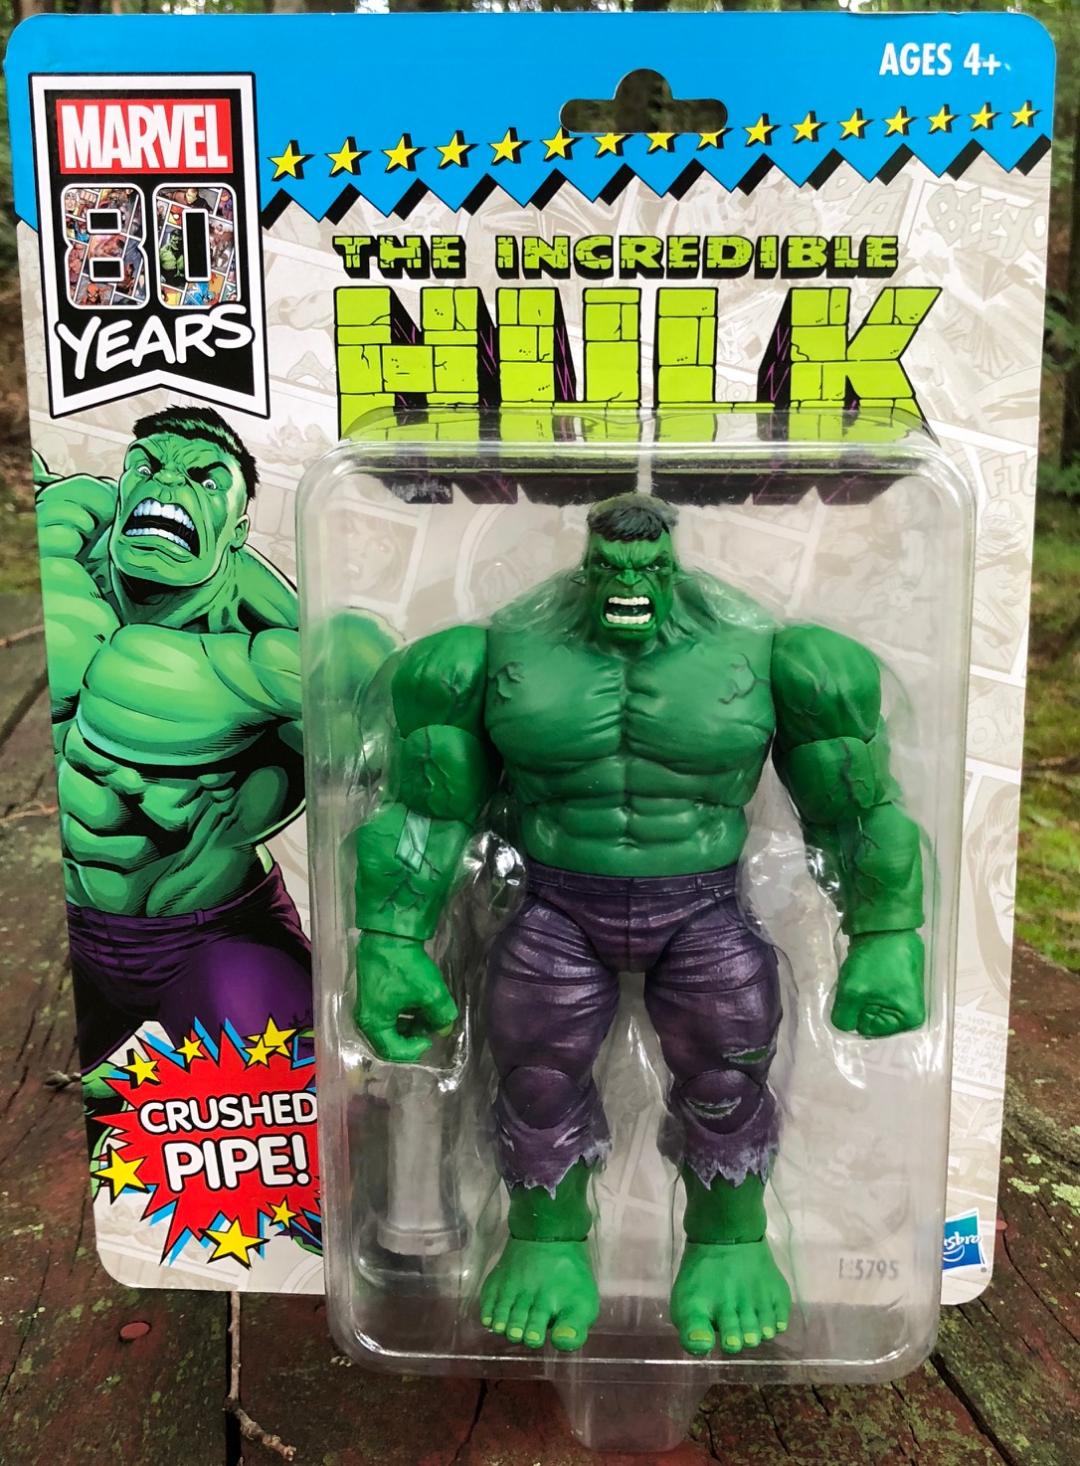 2019-San-Diego-Comic-Con-Hasbro-Exclusive-Marvel-Legends-Hulk-Vintage-Packaging.jpg